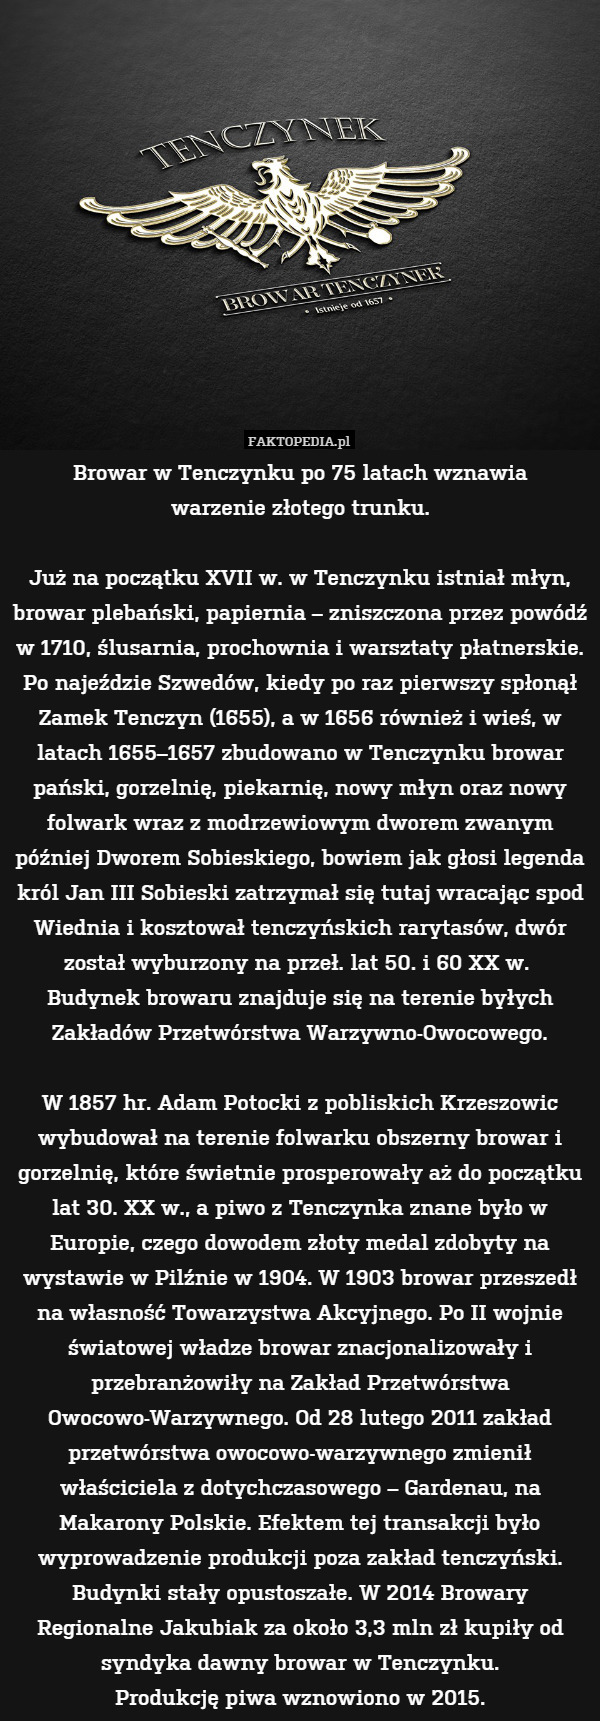 Browar w Tenczynku po 75 latach wznawia
warzenie złotego trunku.

Już na początku XVII w. w Tenczynku istniał młyn, browar plebański, papiernia – zniszczona przez powódź w 1710, ślusarnia, prochownia i warsztaty płatnerskie. Po najeździe Szwedów, kiedy po raz pierwszy spłonął Zamek Tenczyn (1655), a w 1656 również i wieś, w latach 1655–1657 zbudowano w Tenczynku browar pański, gorzelnię, piekarnię, nowy młyn oraz nowy folwark wraz z modrzewiowym dworem zwanym później Dworem Sobieskiego, bowiem jak głosi legenda król Jan III Sobieski zatrzymał się tutaj wracając spod Wiednia i kosztował tenczyńskich rarytasów, dwór został wyburzony na przeł. lat 50. i 60 XX w. 
Budynek browaru znajduje się na terenie byłych Zakładów Przetwórstwa Warzywno-Owocowego.

W 1857 hr. Adam Potocki z pobliskich Krzeszowic wybudował na terenie folwarku obszerny browar i gorzelnię, które świetnie prosperowały aż do początku lat 30. XX w., a piwo z Tenczynka znane było w Europie, czego dowodem złoty medal zdobyty na wystawie w Pilźnie w 1904. W 1903 browar przeszedł na własność Towarzystwa Akcyjnego. Po II wojnie światowej władze browar znacjonalizowały i przebranżowiły na Zakład Przetwórstwa Owocowo-Warzywnego. Od 28 lutego 2011 zakład przetwórstwa owocowo-warzywnego zmienił właściciela z dotychczasowego – Gardenau, na Makarony Polskie. Efektem tej transakcji było wyprowadzenie produkcji poza zakład tenczyński. Budynki stały opustoszałe. W 2014 Browary Regionalne Jakubiak za około 3,3 mln zł kupiły od syndyka dawny browar w Tenczynku.
Produkcję piwa wznowiono w 2015. 